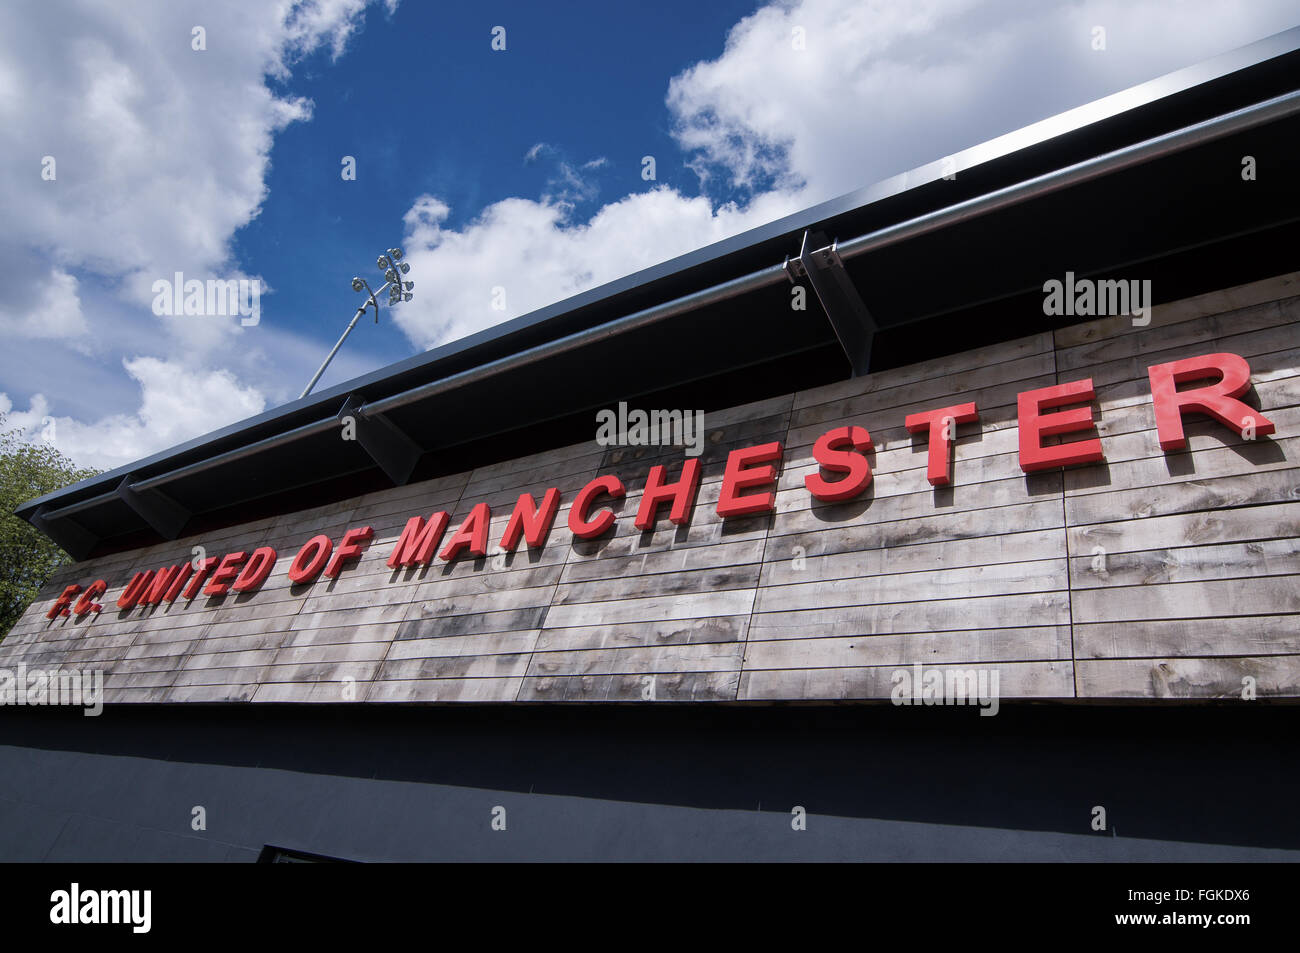 Broadhurst Park, FC United of Manchester's ground en développement. Moston est fréquemment desservie par L'affichage principal. Banque D'Images